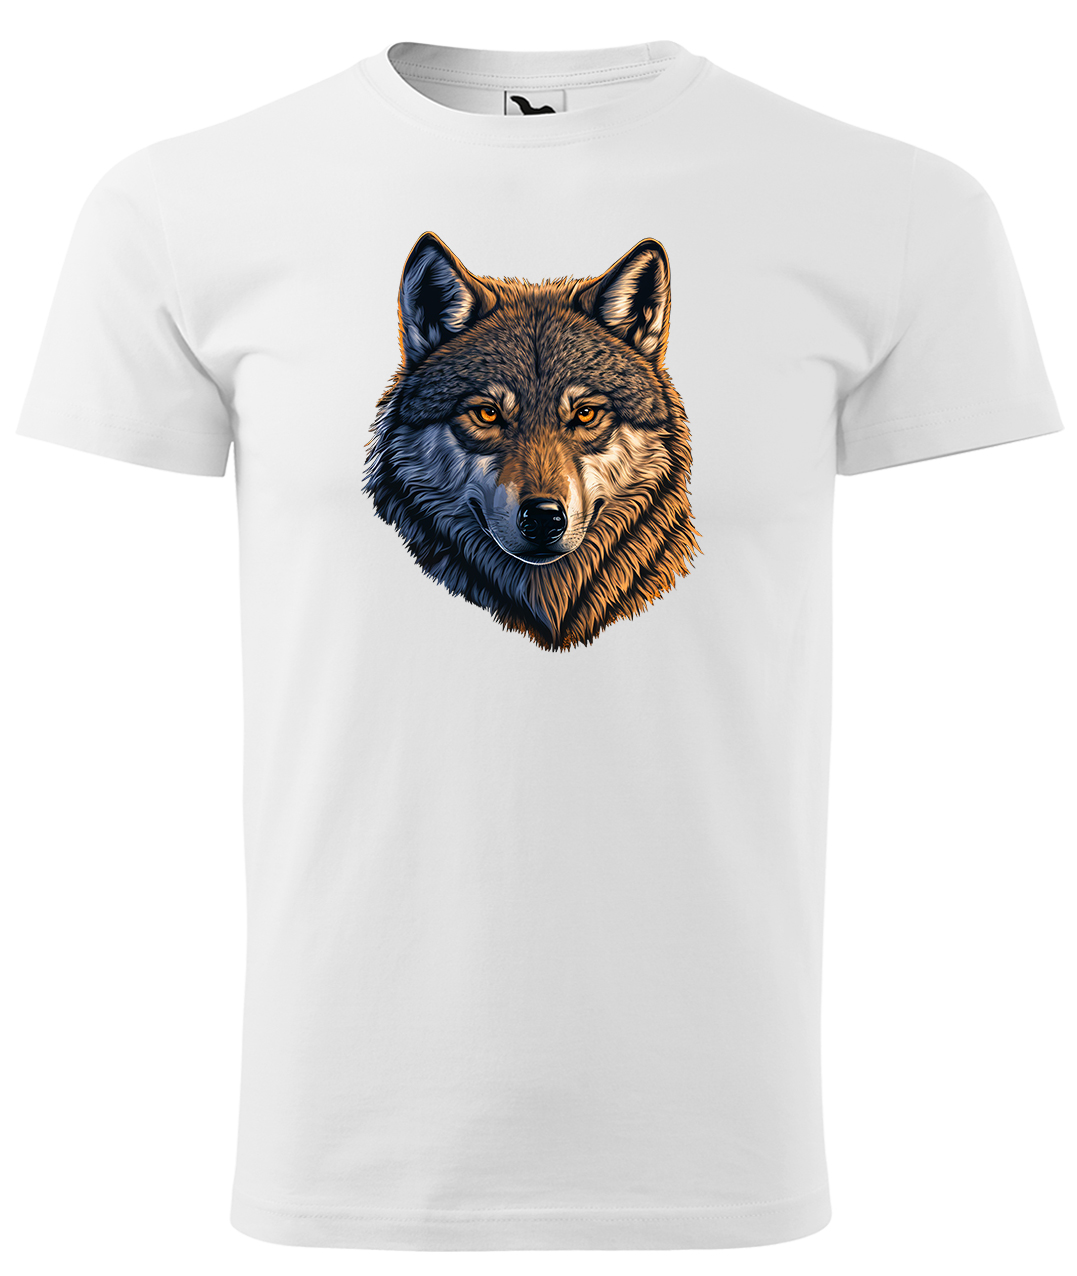 Dětské tričko s vlkem - Hlava vlka Velikost: 10 let / 146 cm, Barva: Bílá (00), Délka rukávu: Krátký rukáv